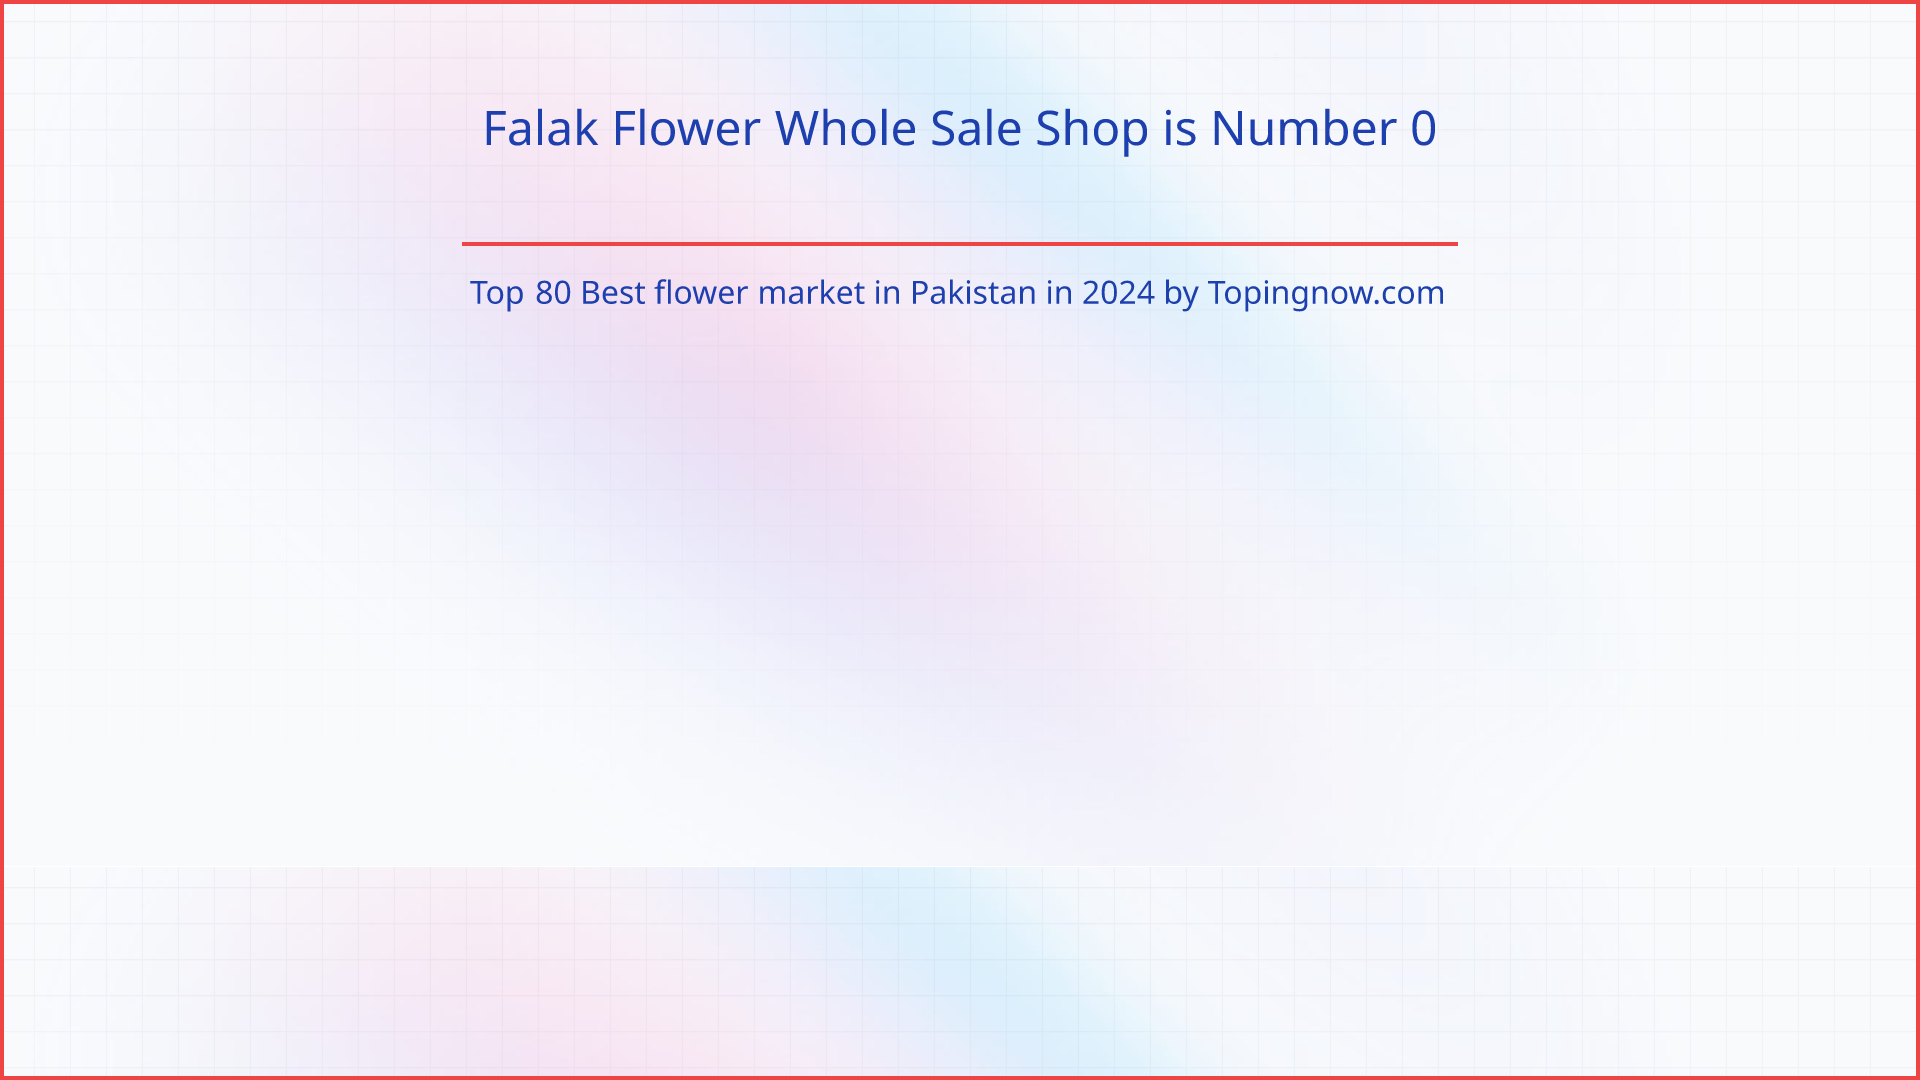 Falak Flower Whole Sale Shop: Top 80 Best flower market in Pakistan in 2024